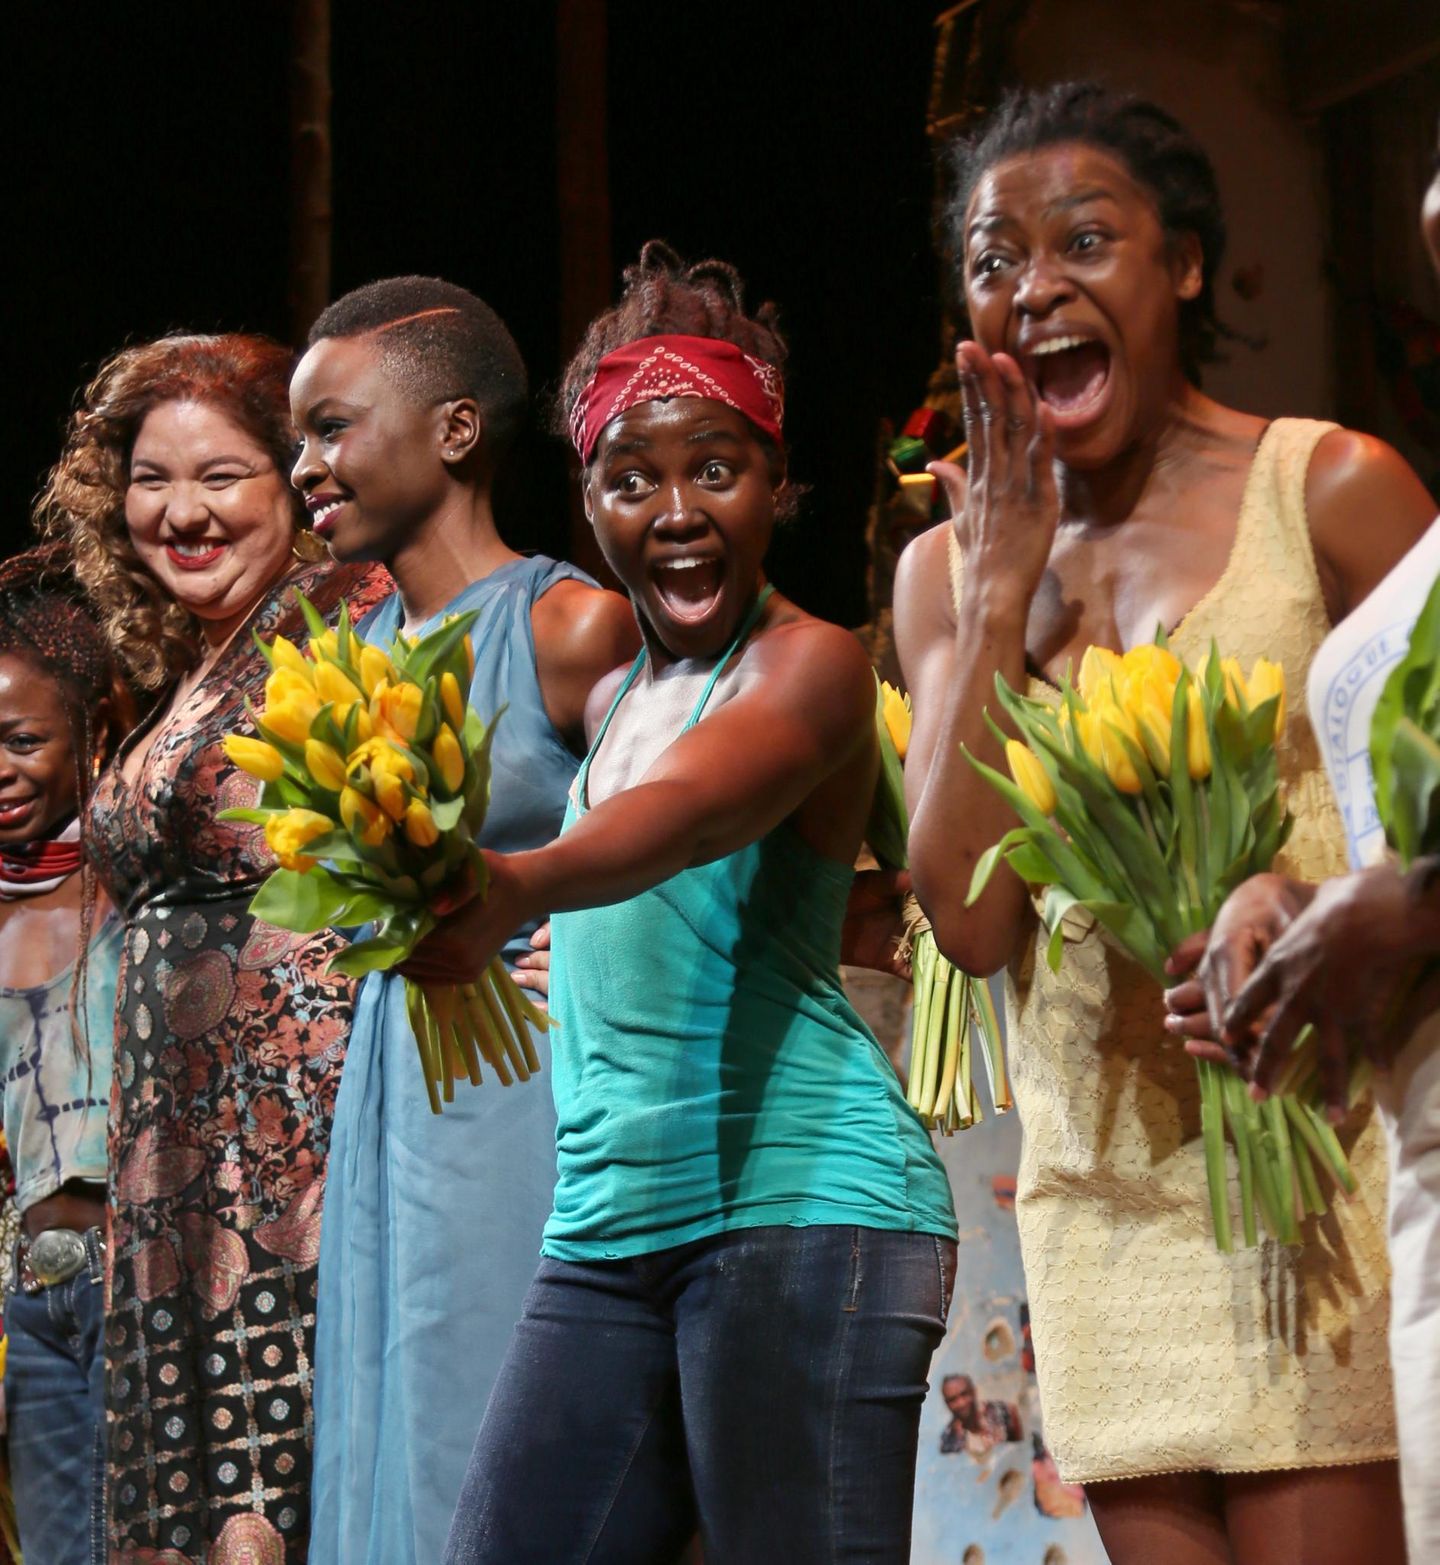 Premierenabend am Broadway: Oscarpreisträgerin Lupita Nyong'o spielt in dem Stück "Eclipsed" in New York.